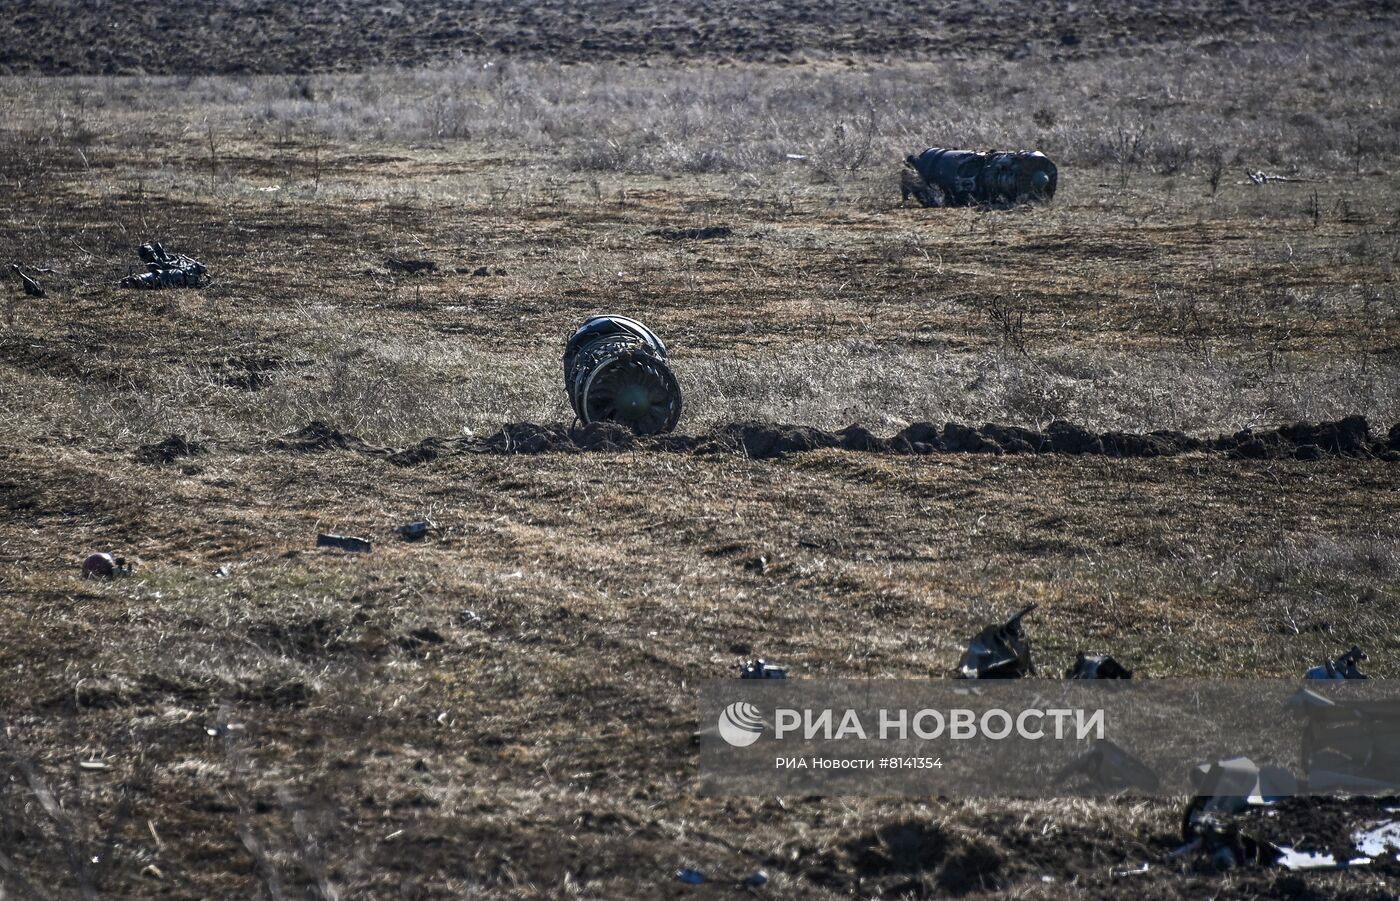 Сбитый украинский штурмовик Су-25 в Херсонской области